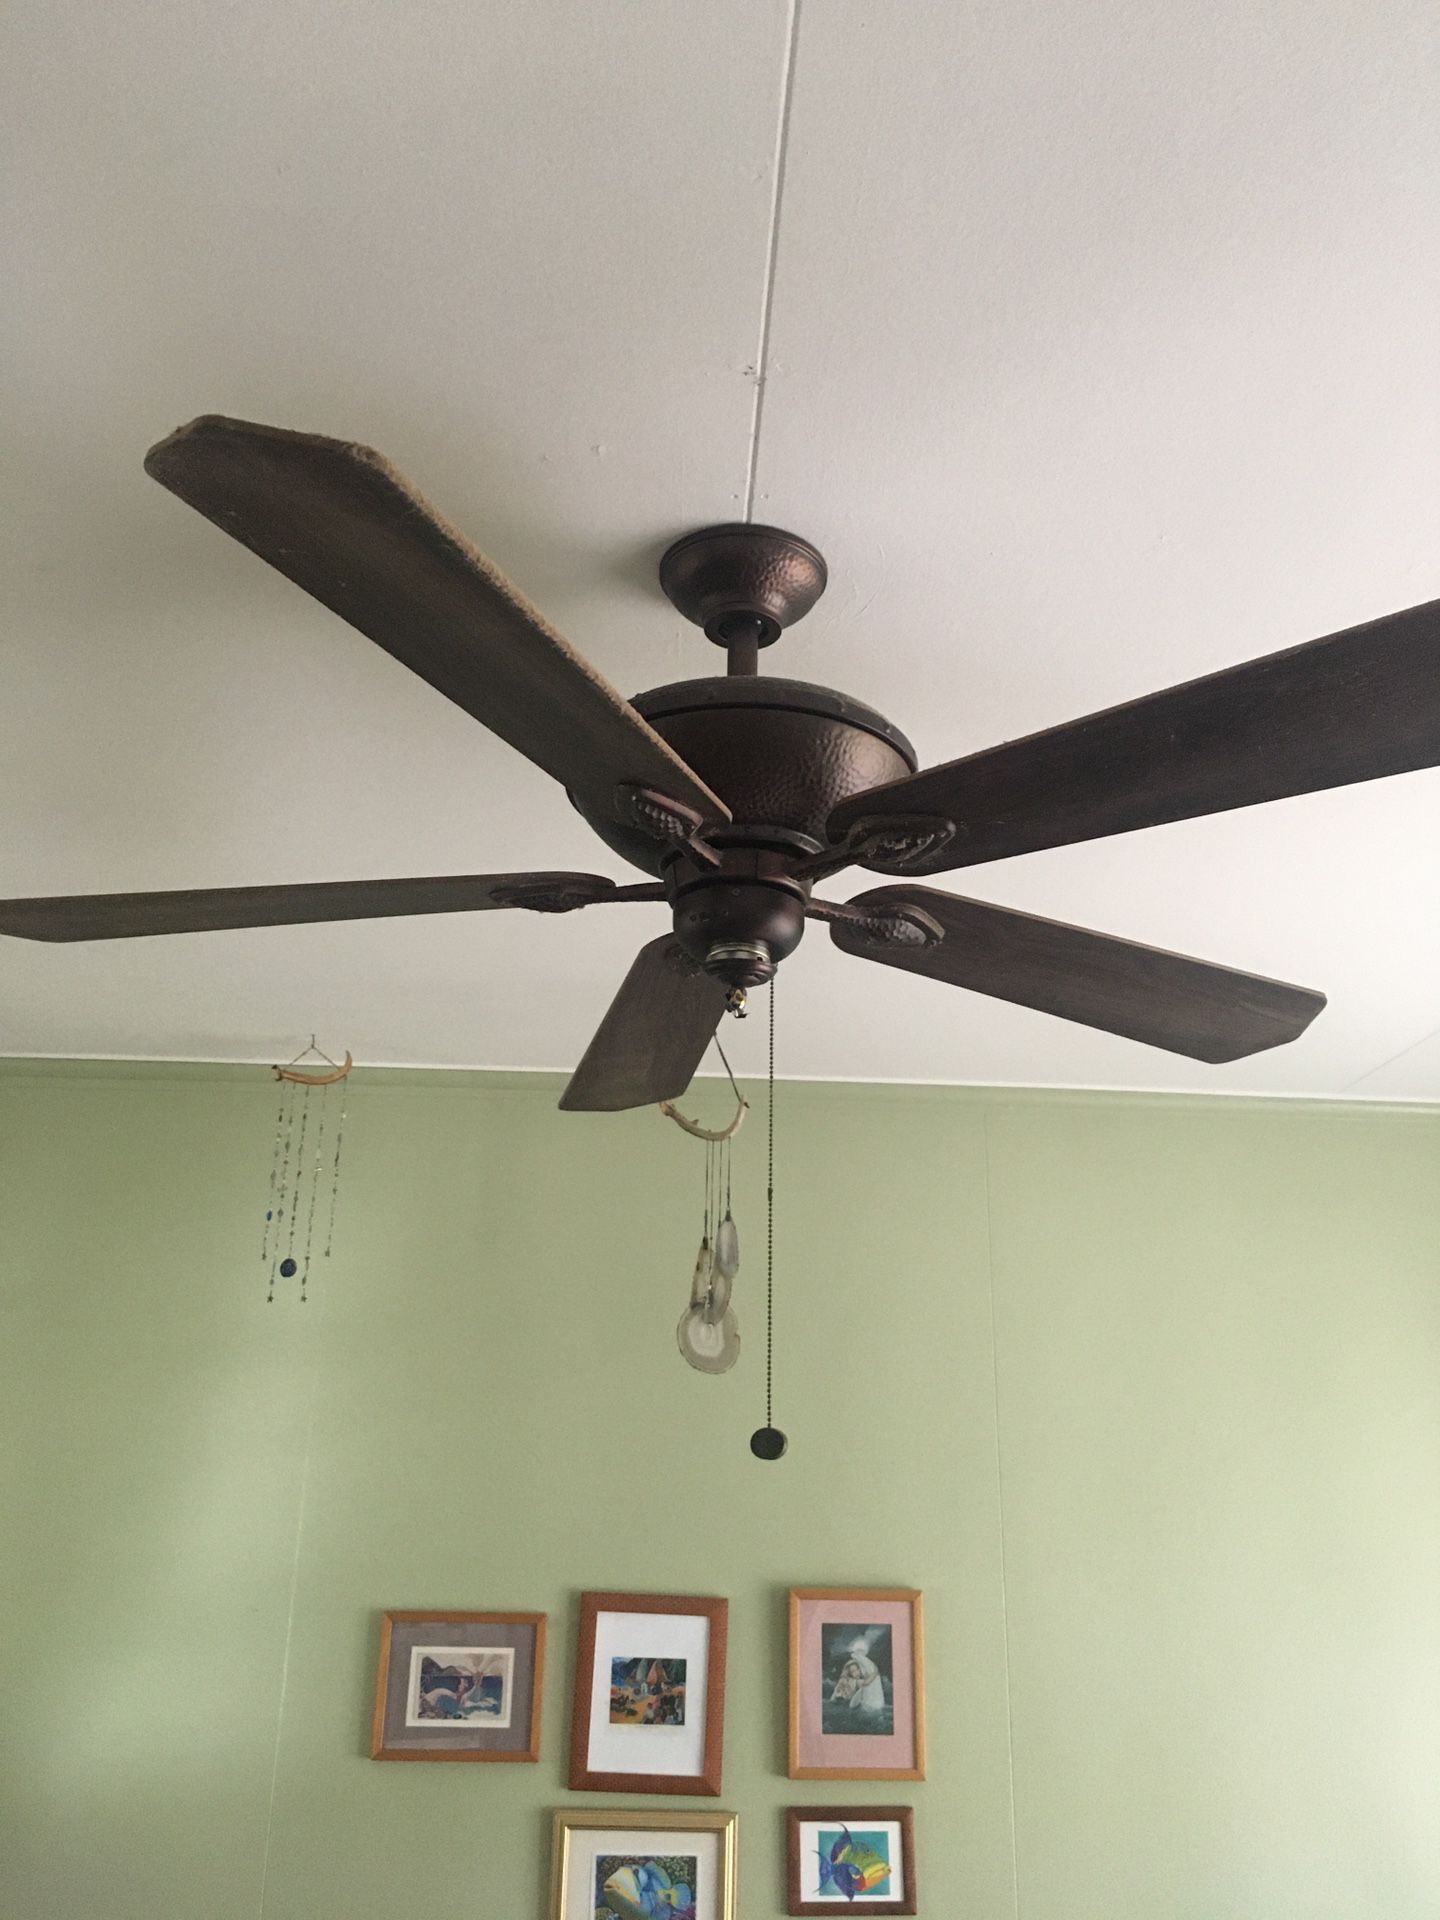 Hampton Bay 52” ceiling fan